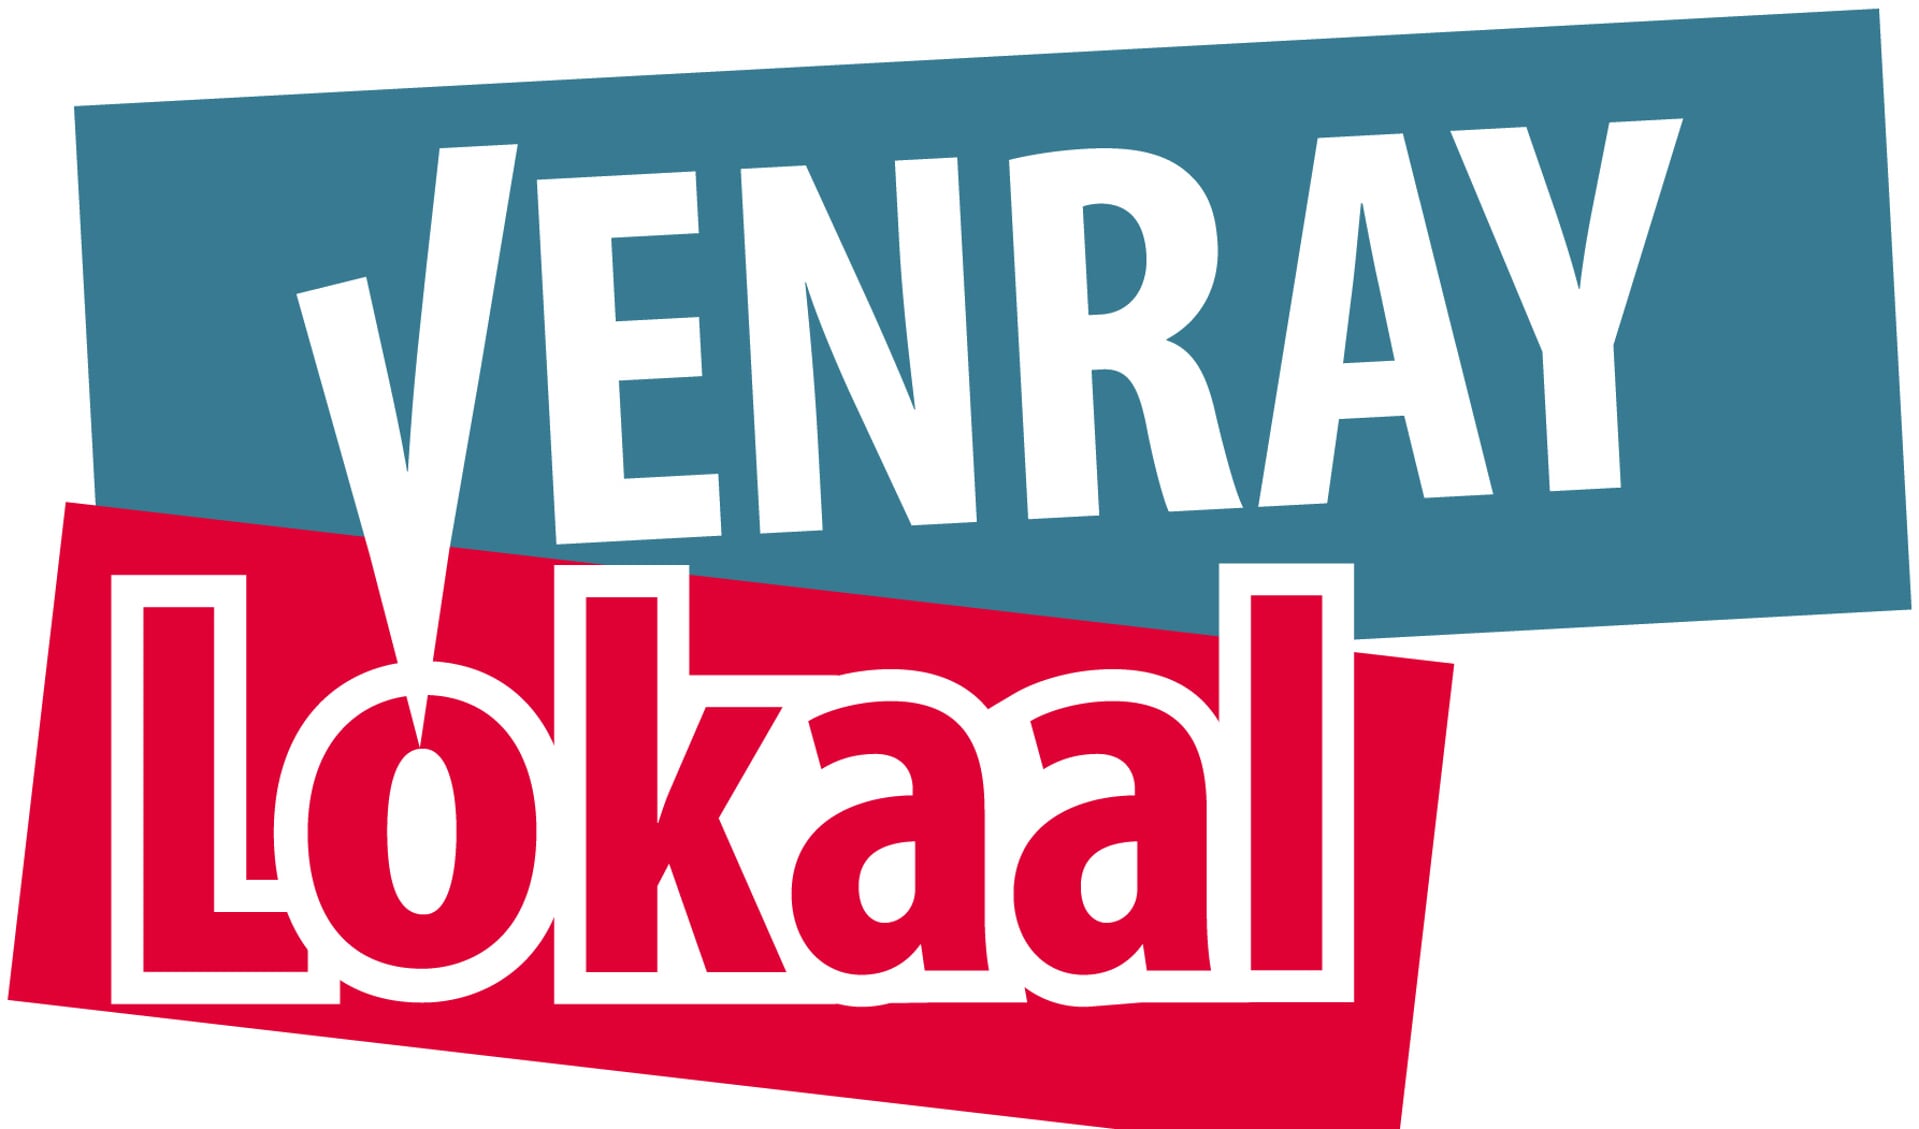 Venray Lokaal presenteert komende week zijn nieuwe wethouder. 